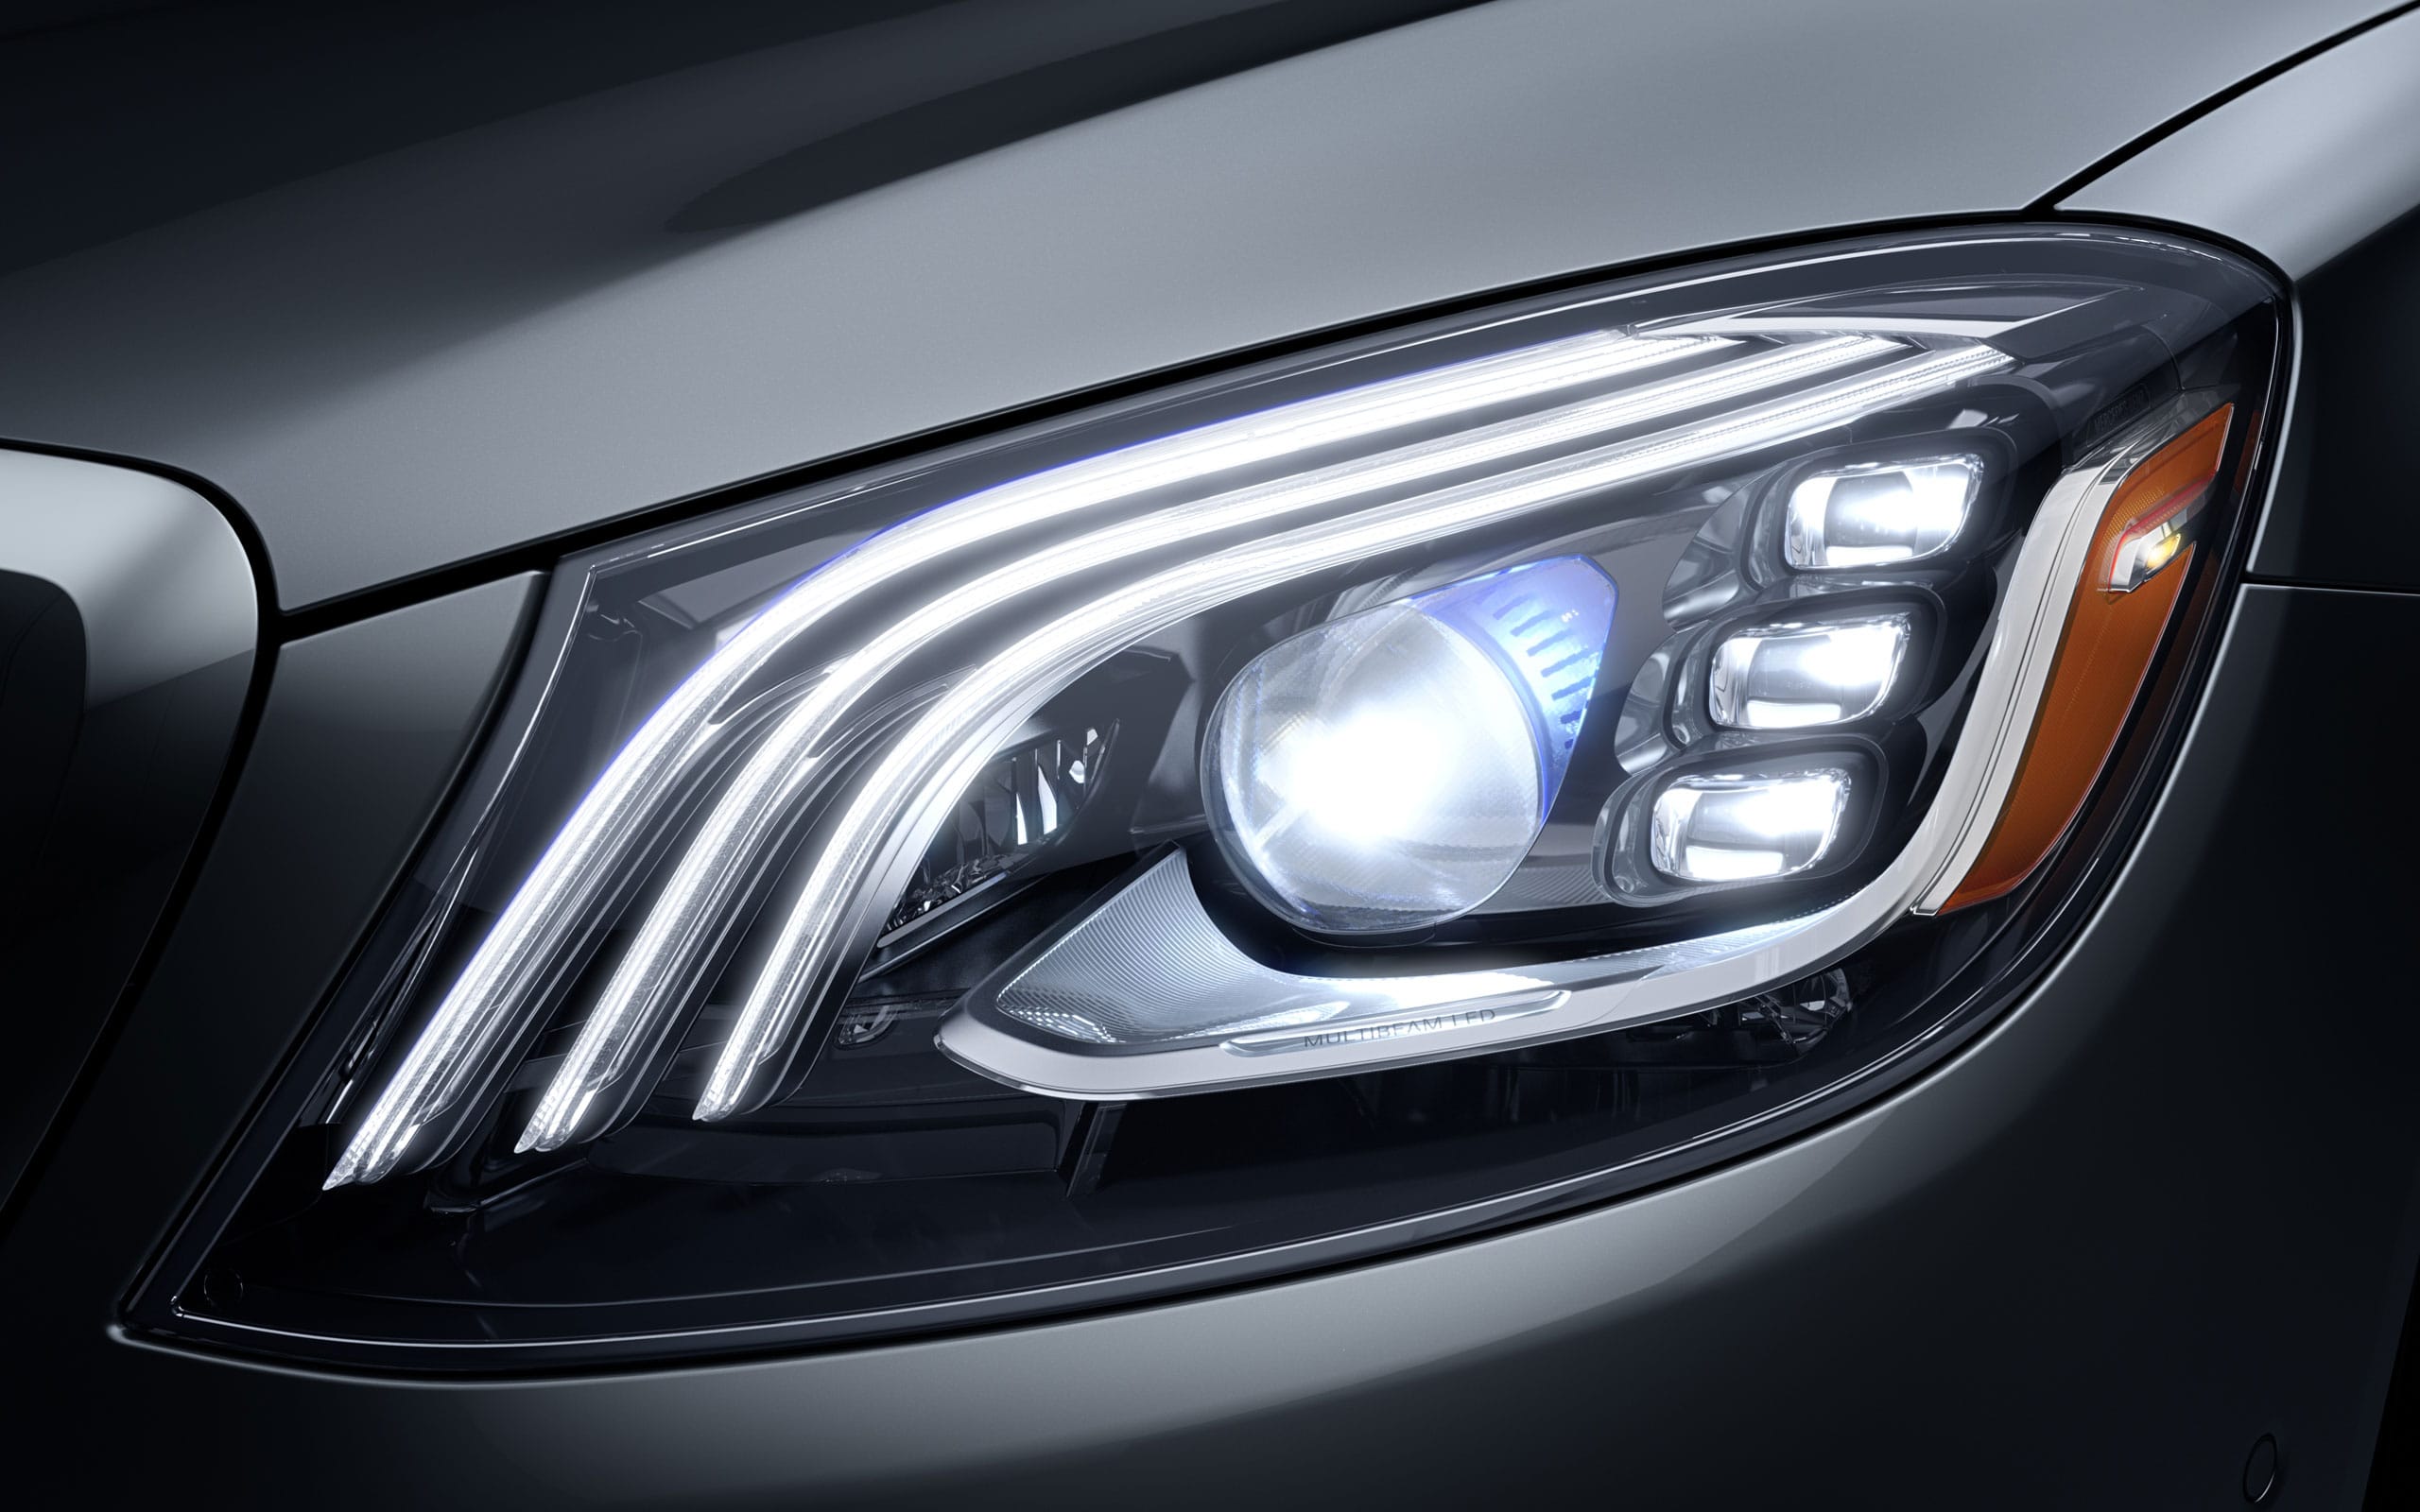 2020 Mercedes-Benz Maybach Headlight | Mercedes Benz